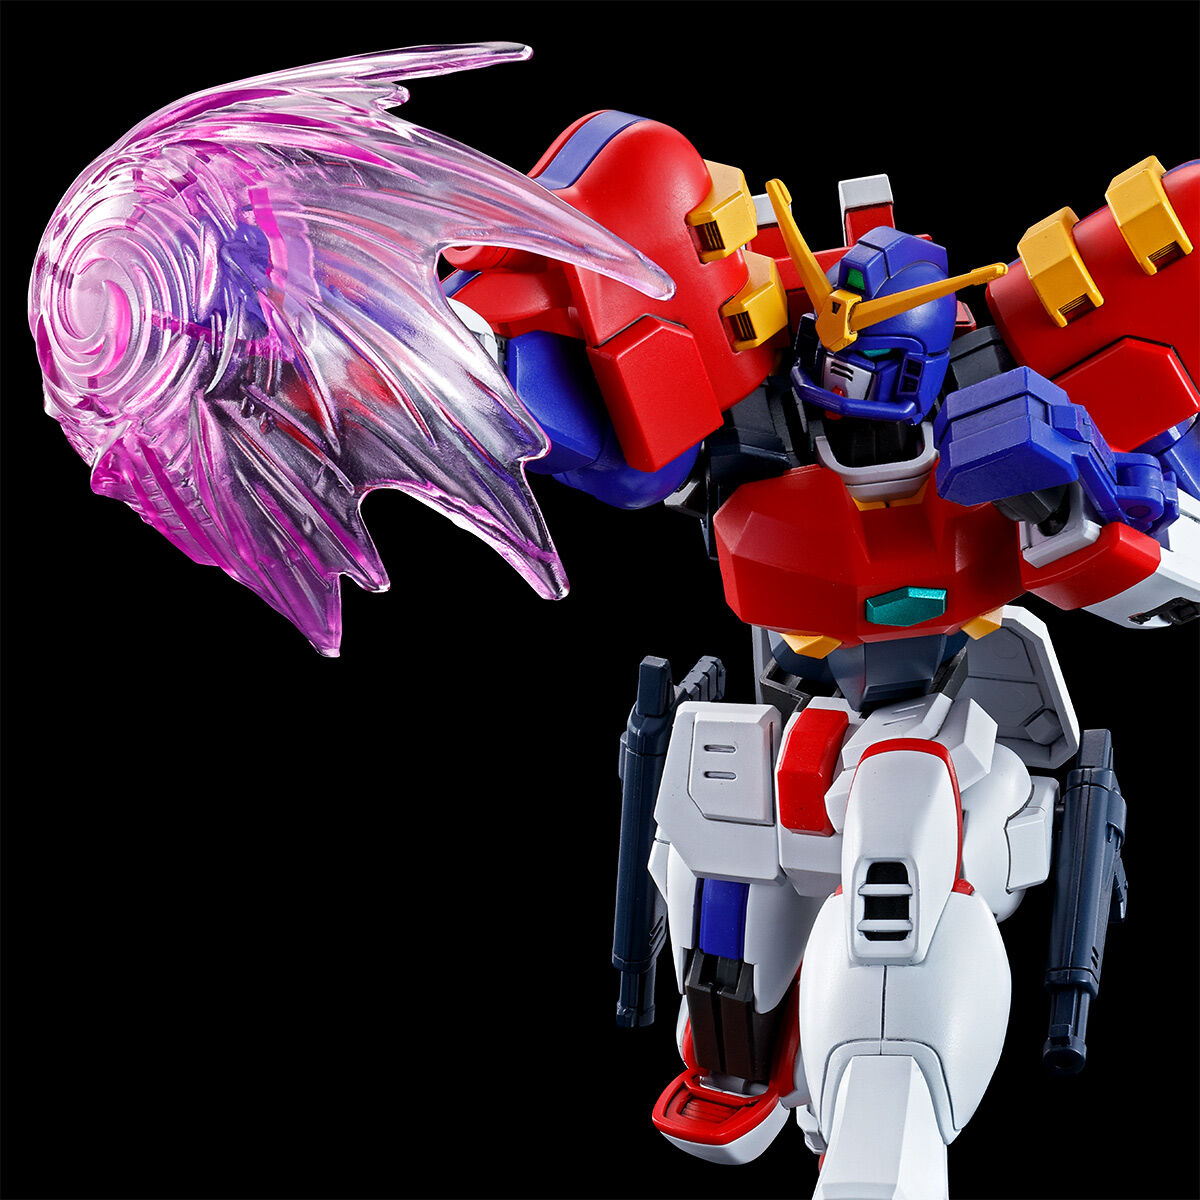 HGFC Gundam Maxter - P-Bandai